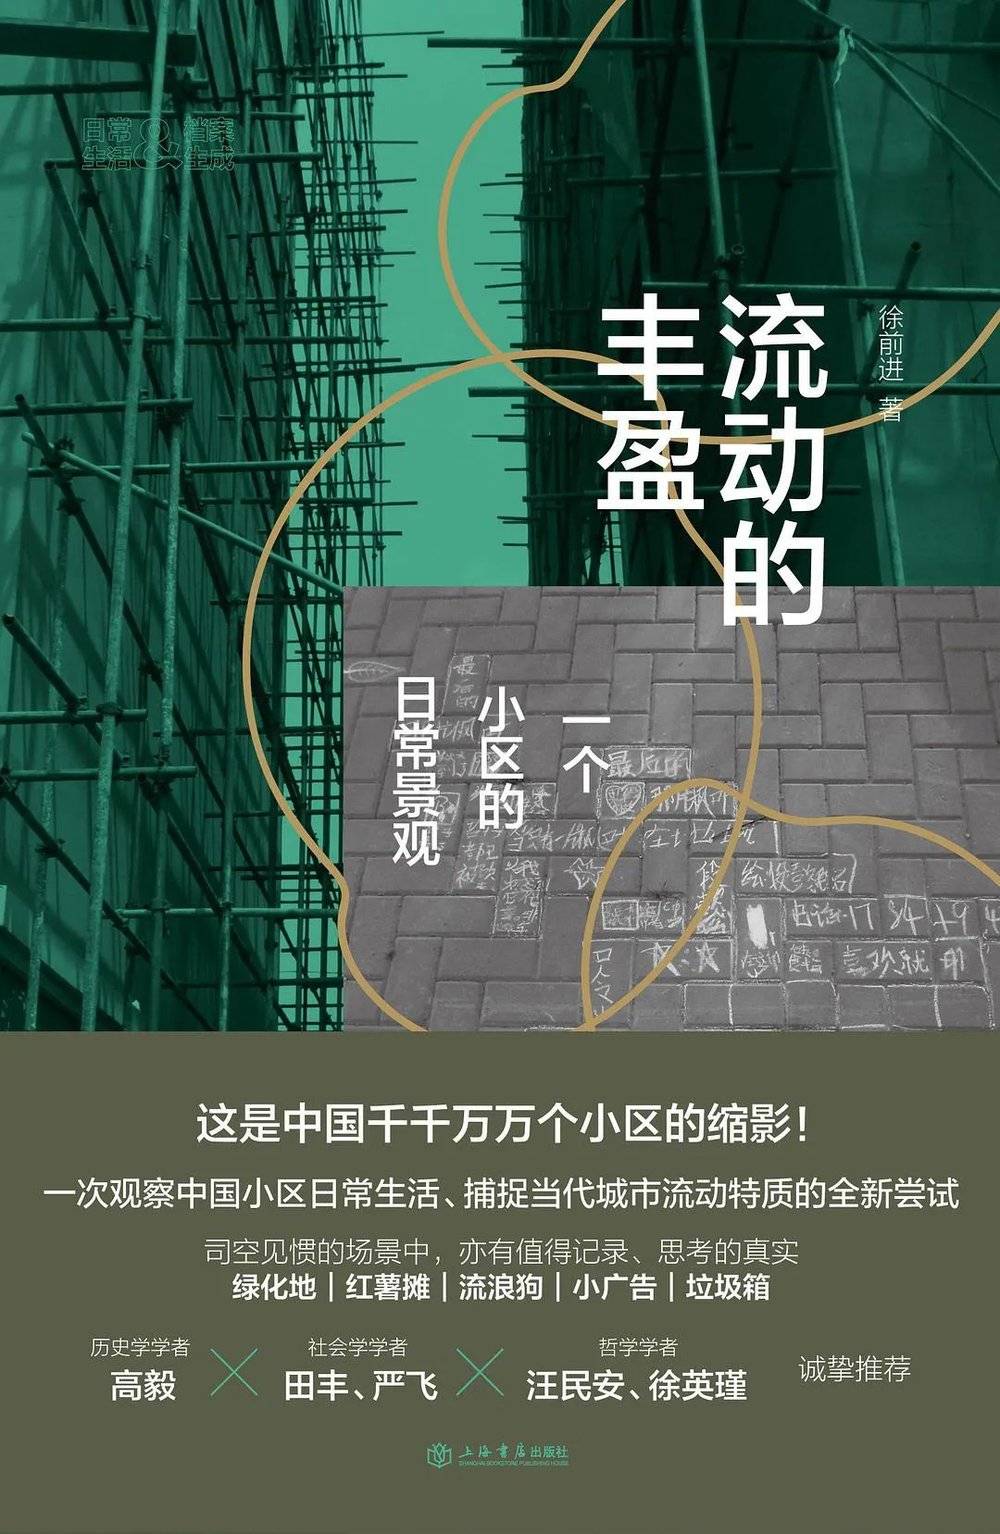 徐前进 著 上海书店出版社，2021-9